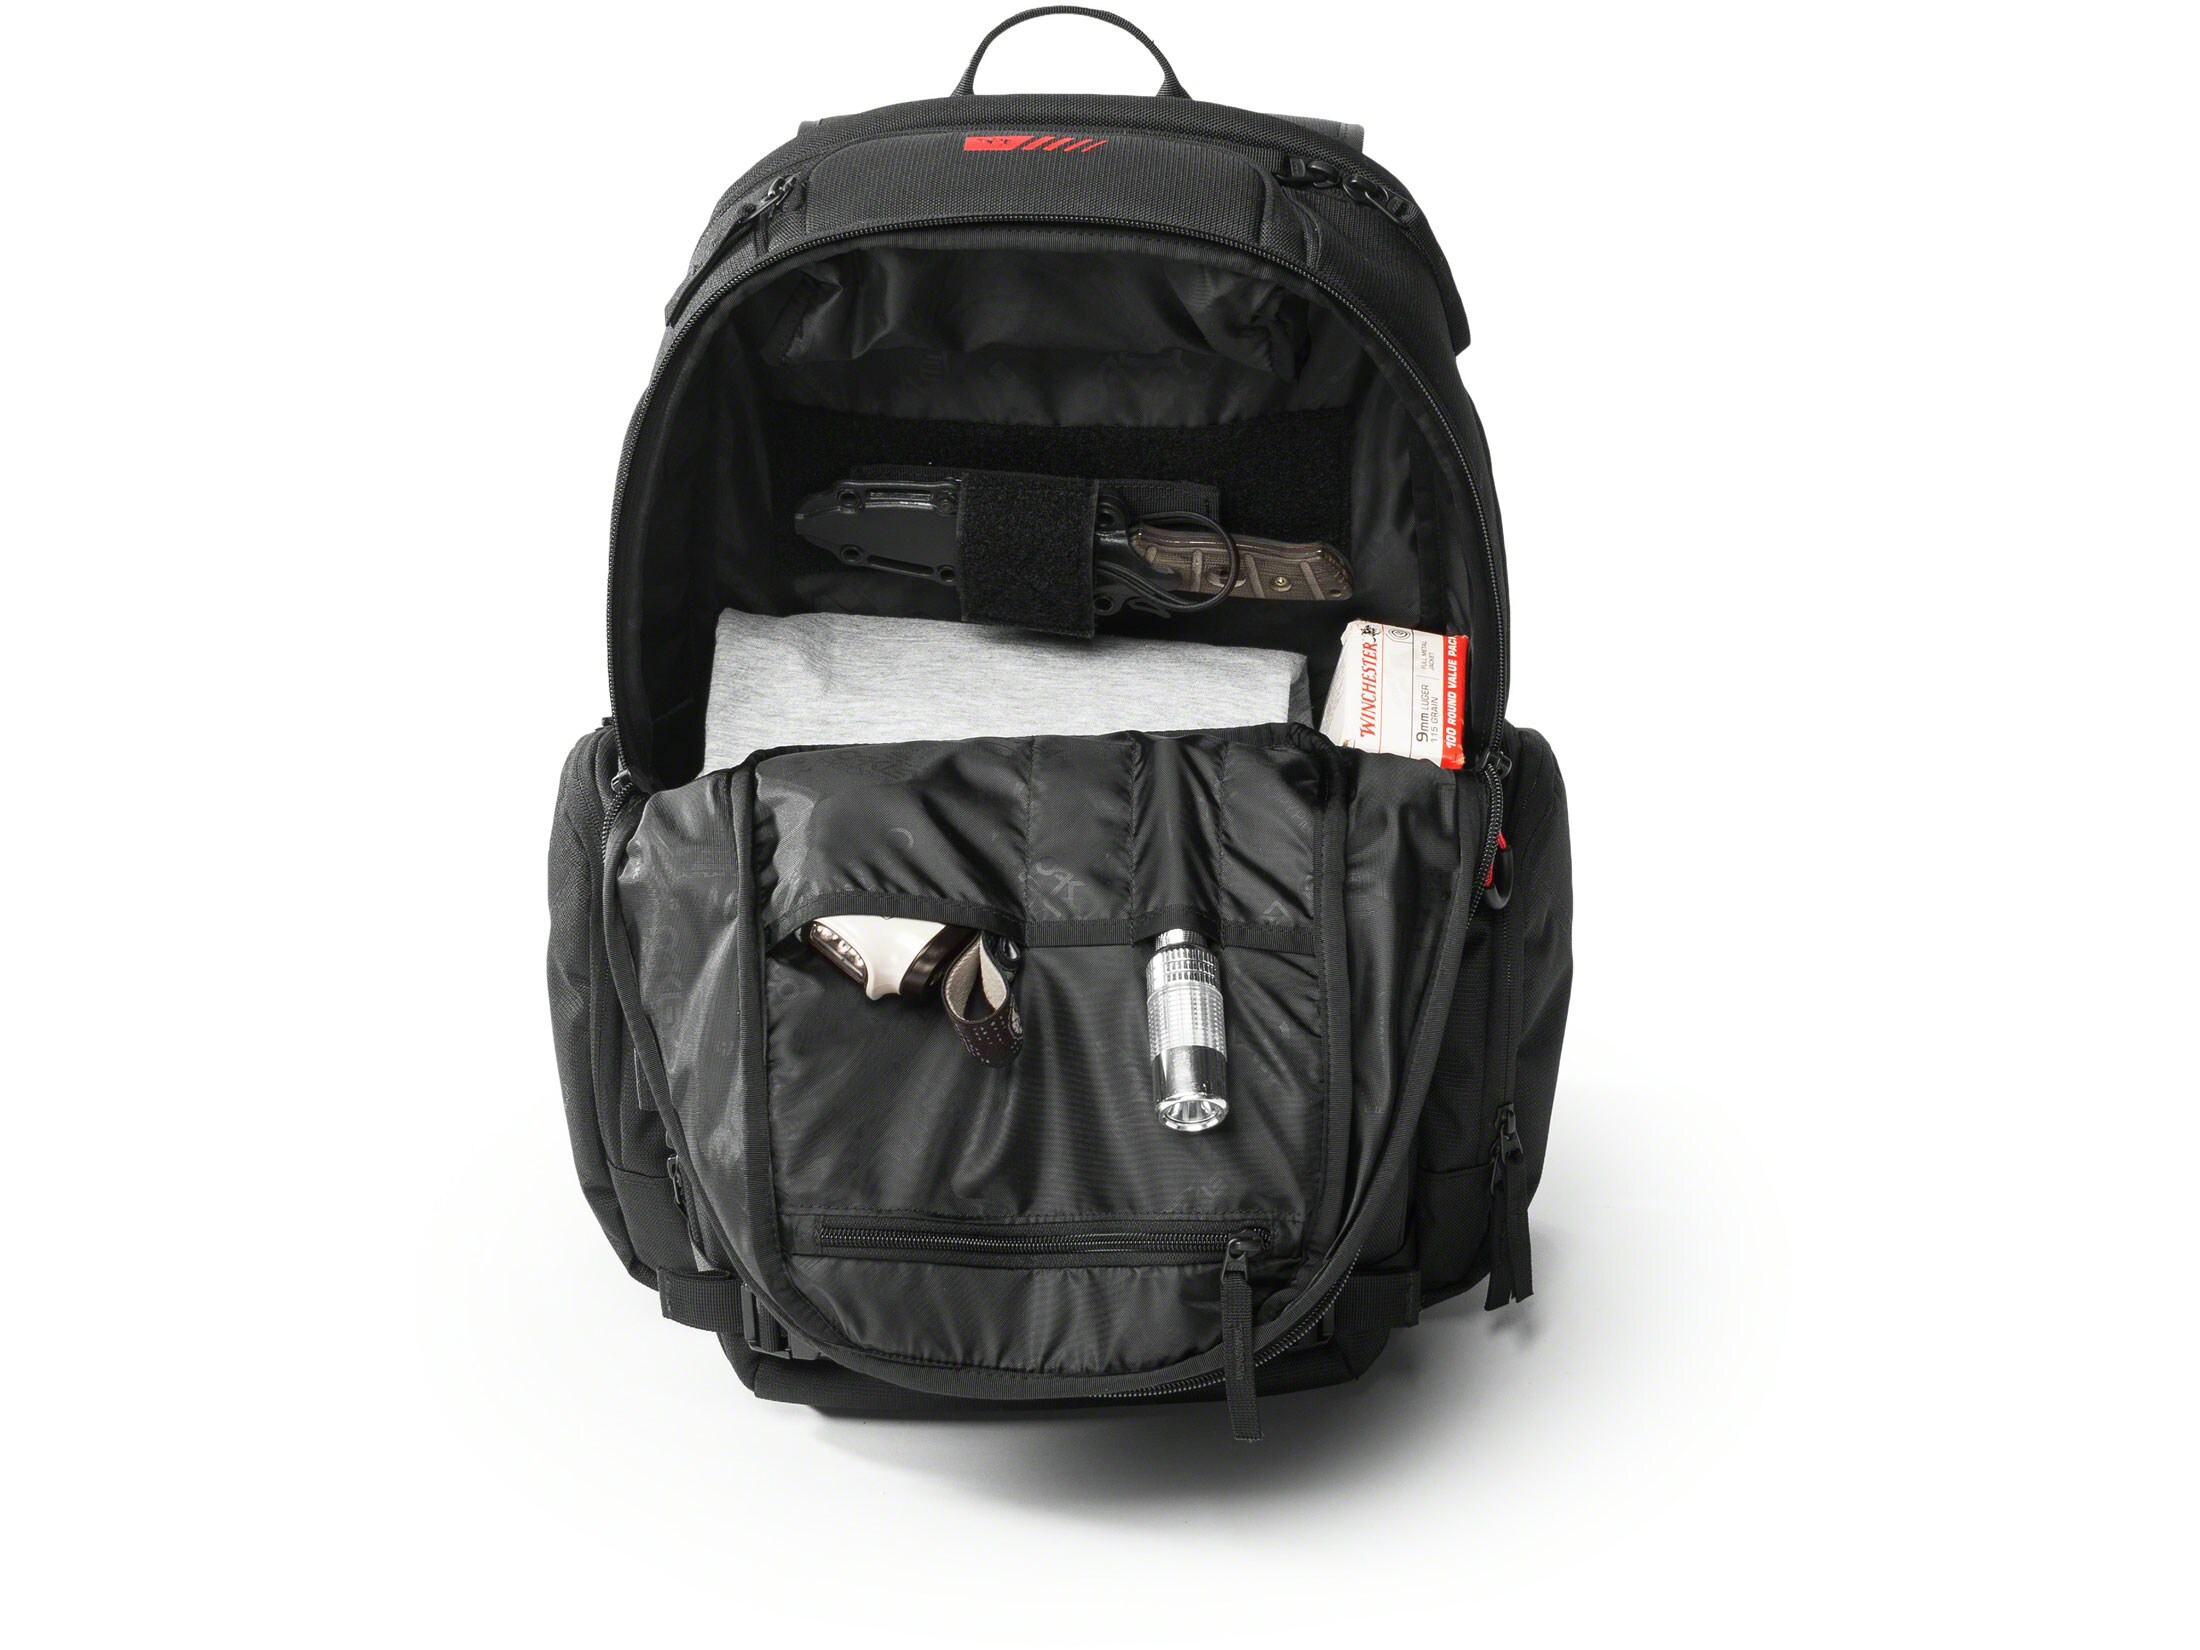 chamber range backpack